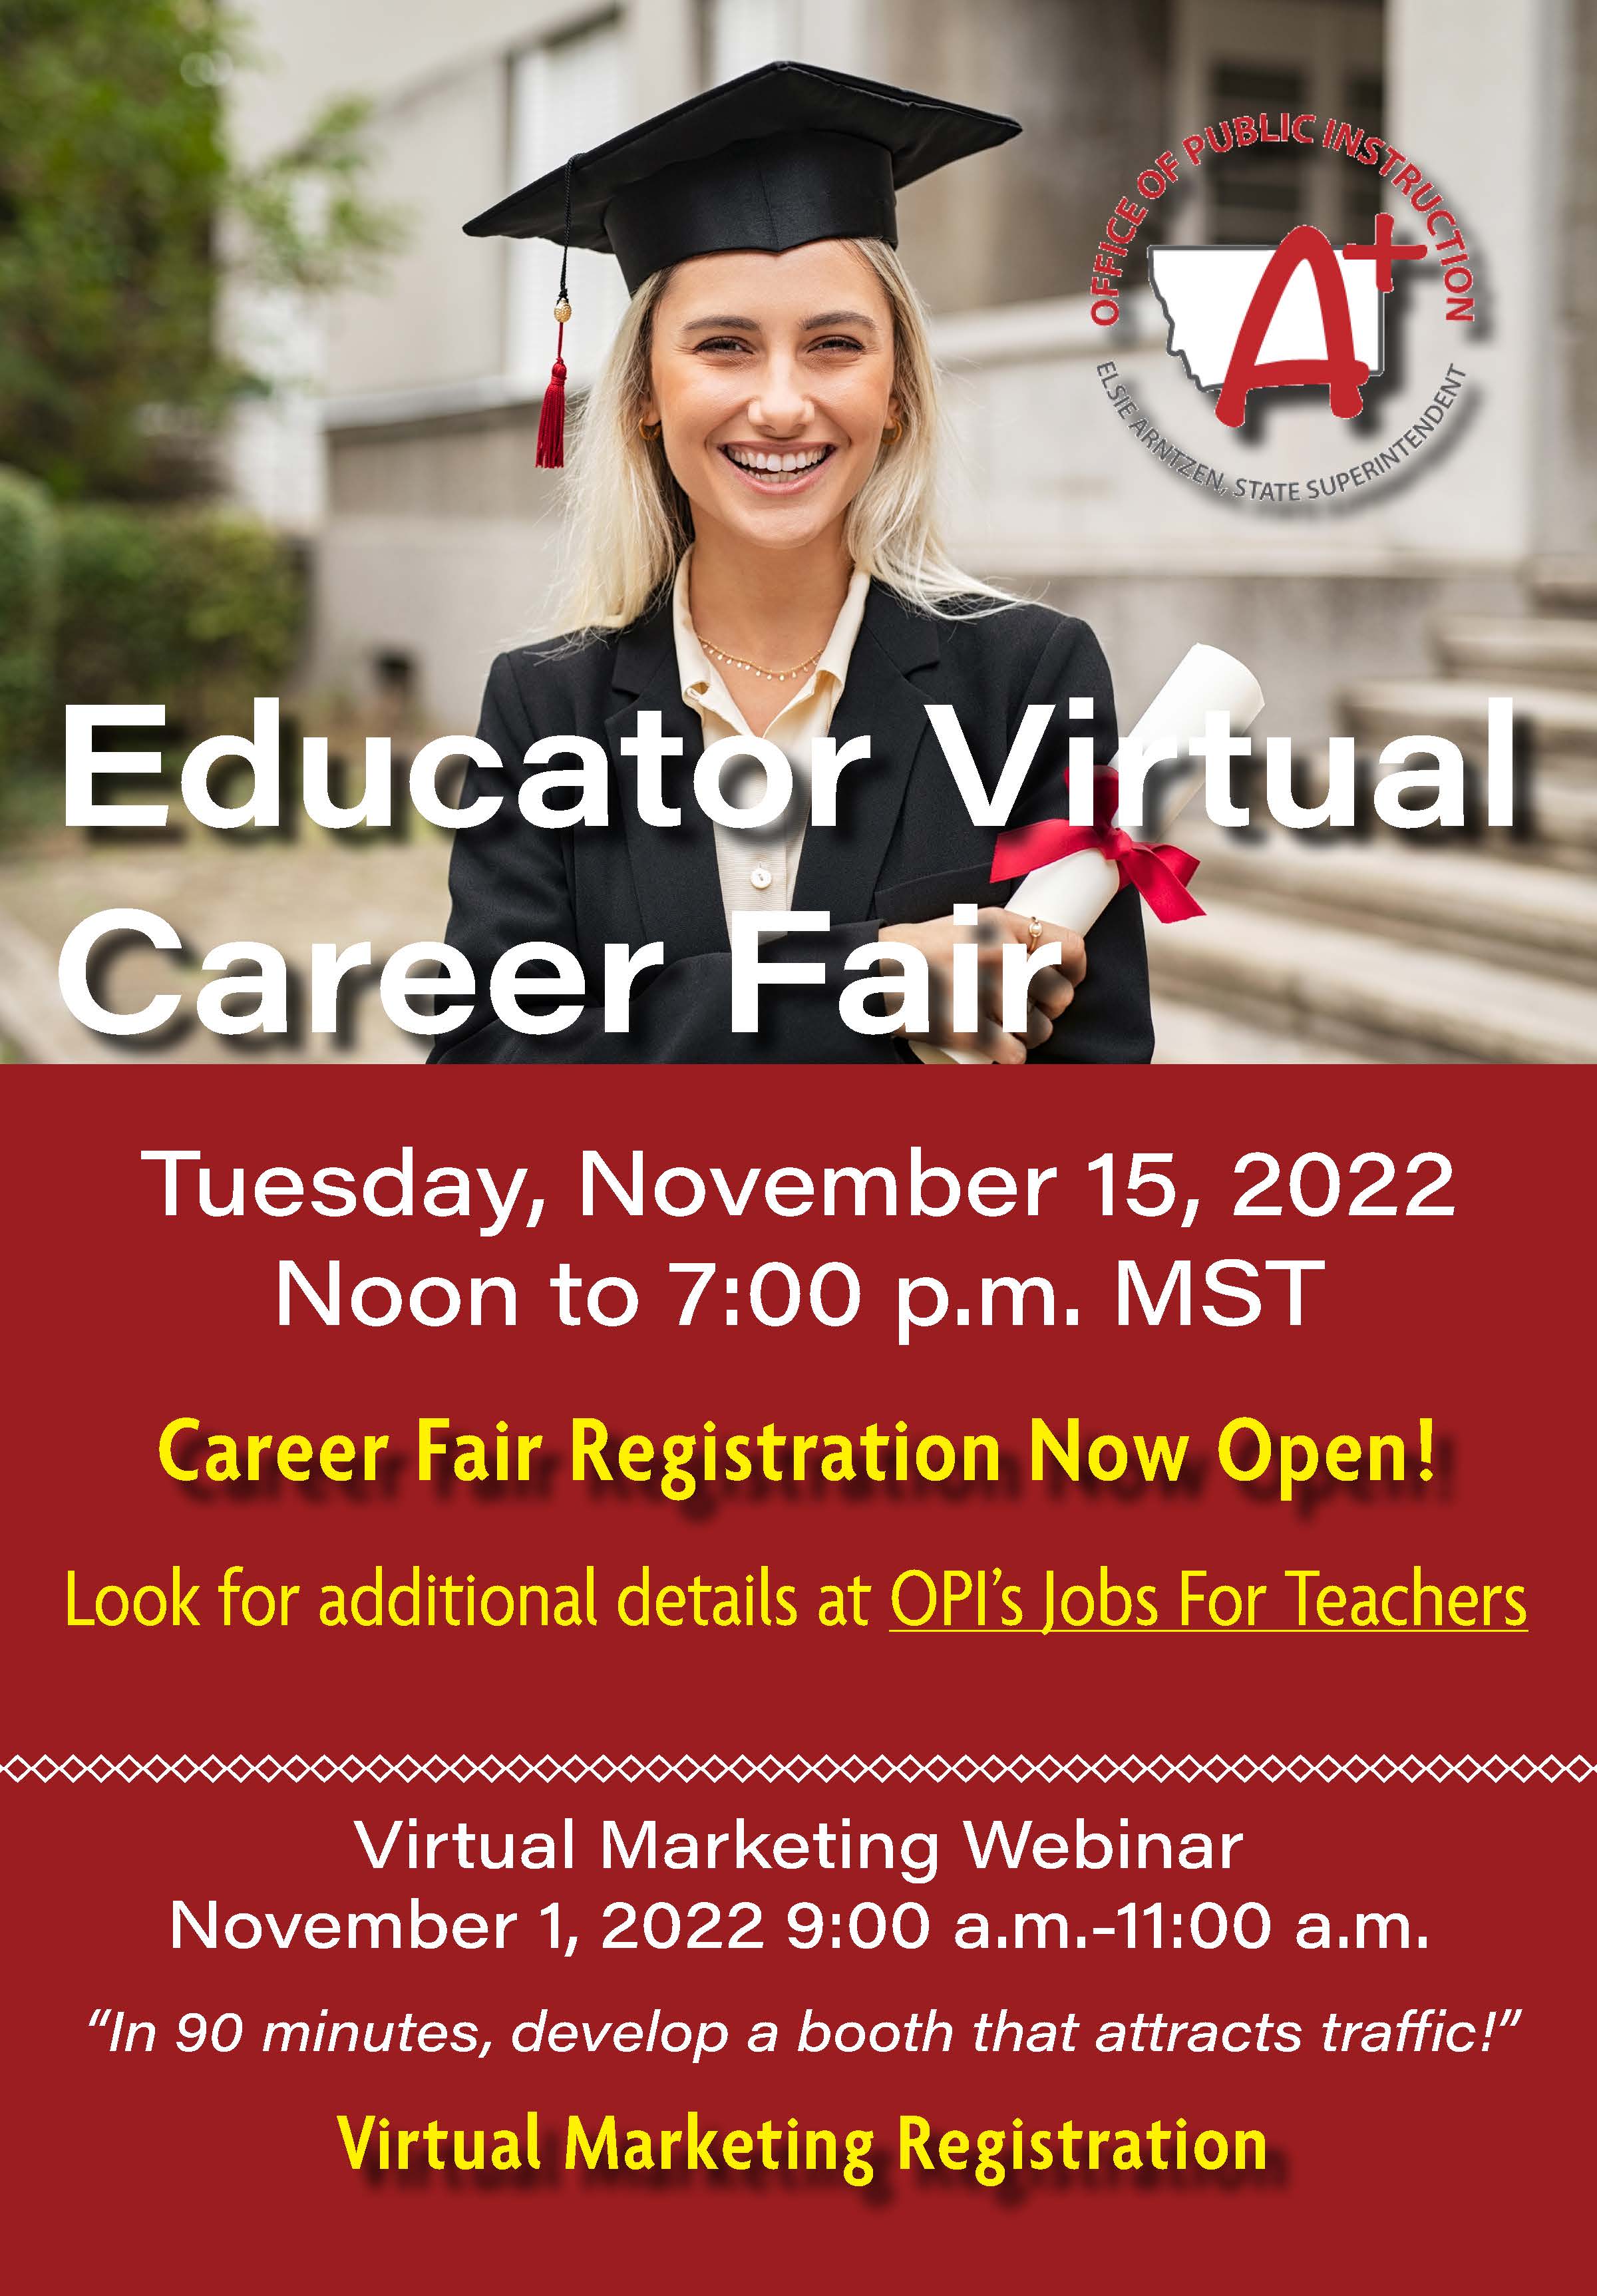 Educator Virtual Career Fair Flyer